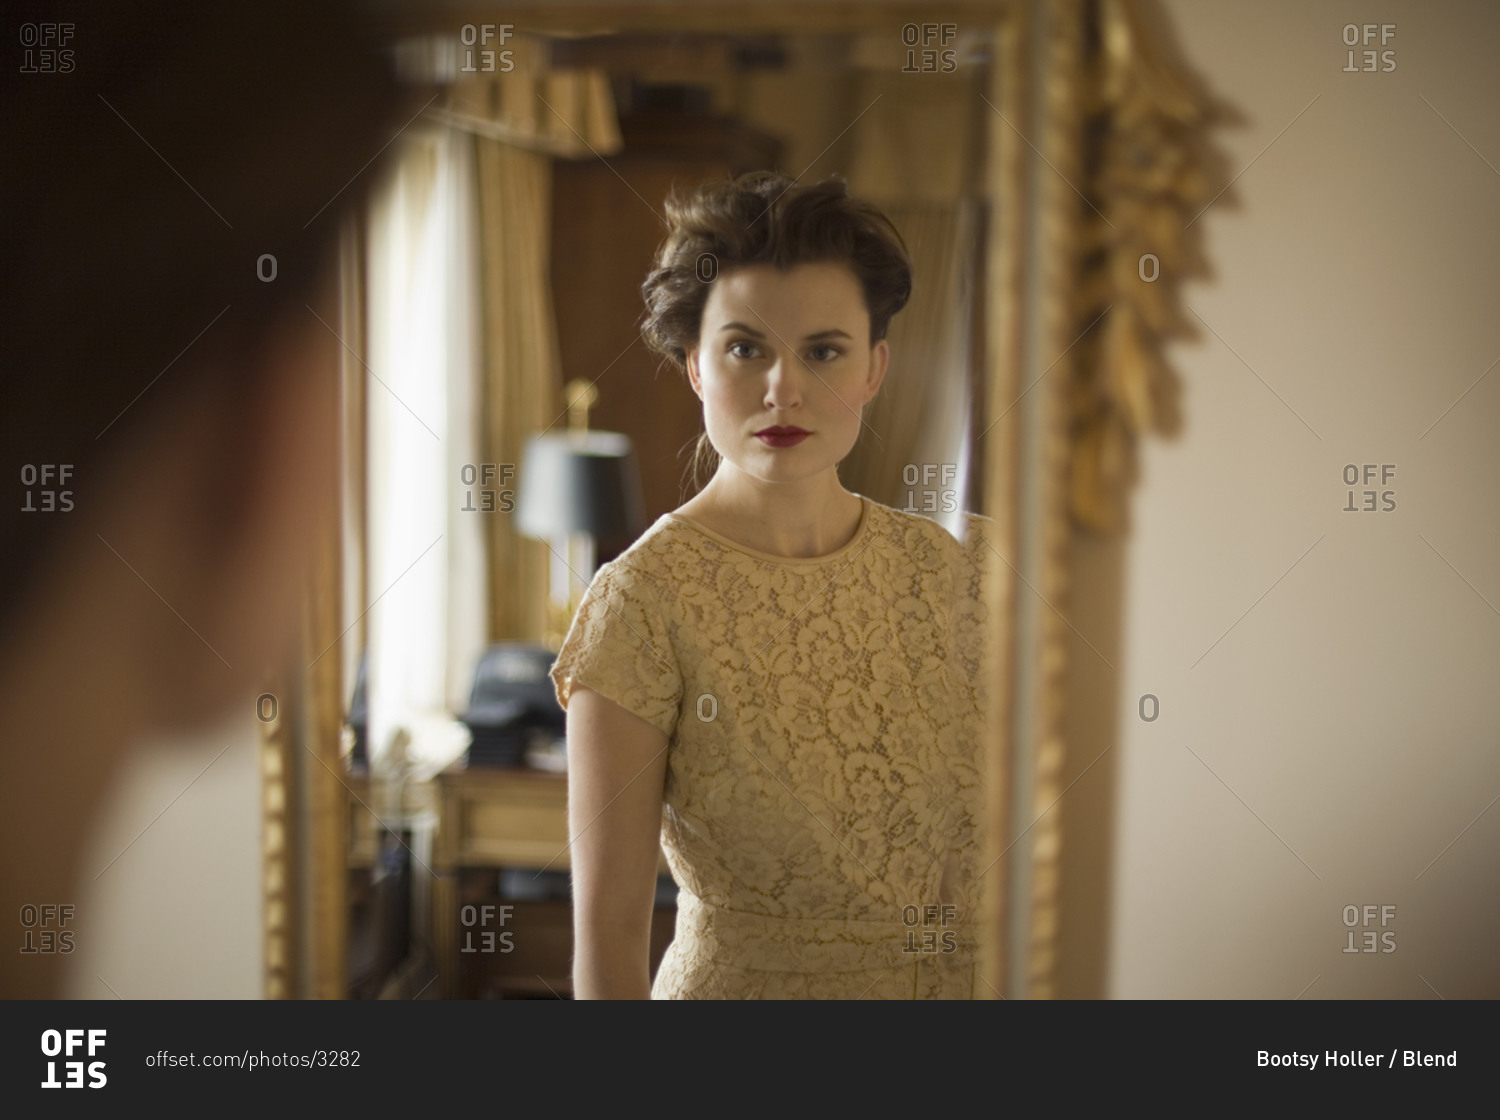 Woman wearing fancy dress looking in mirror